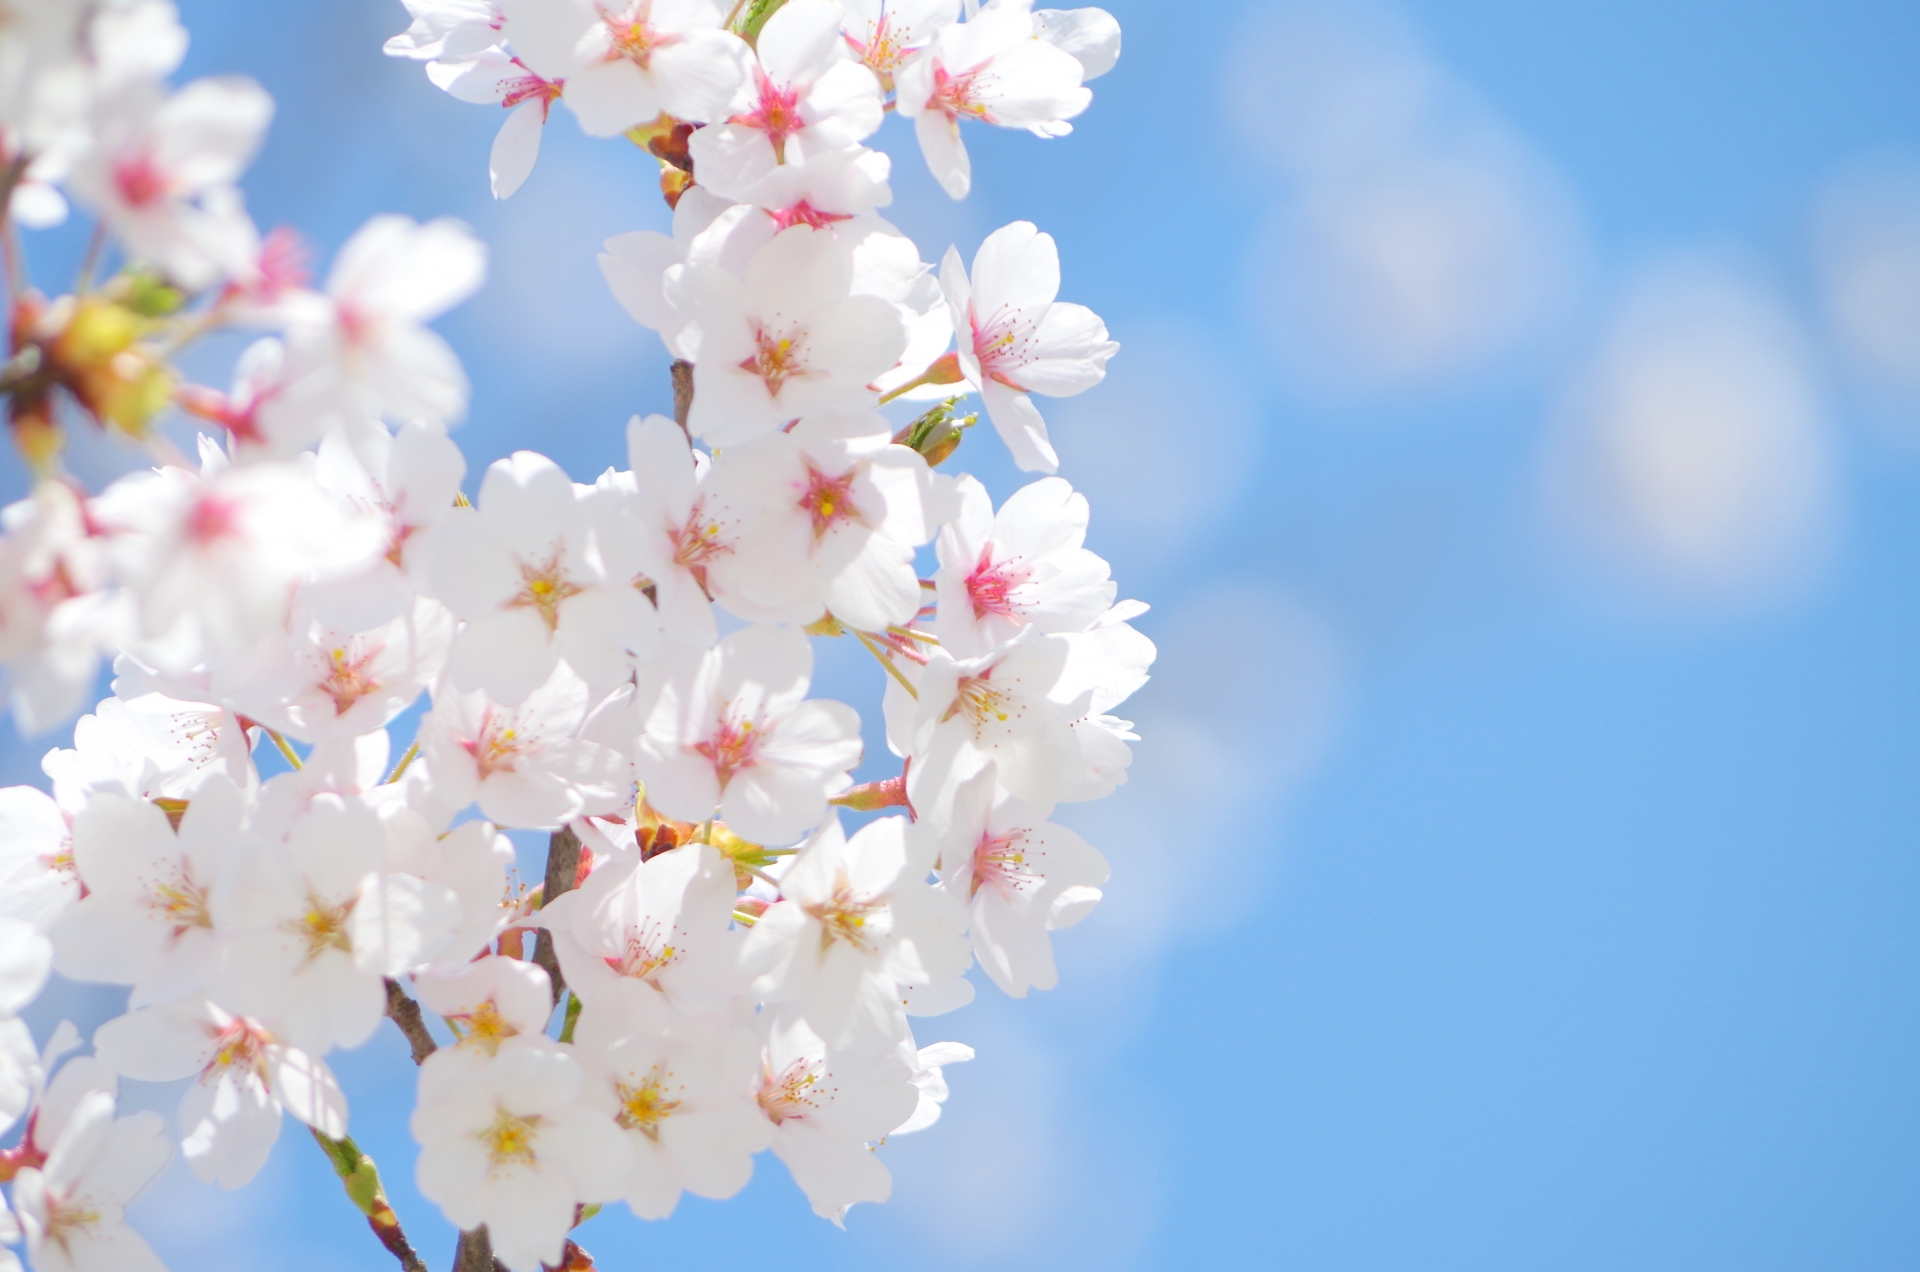 年 岐阜公園 桜の見ごろ 夜桜ライトアップ アクセス情報 情報発信ブログサイト Blue Rose